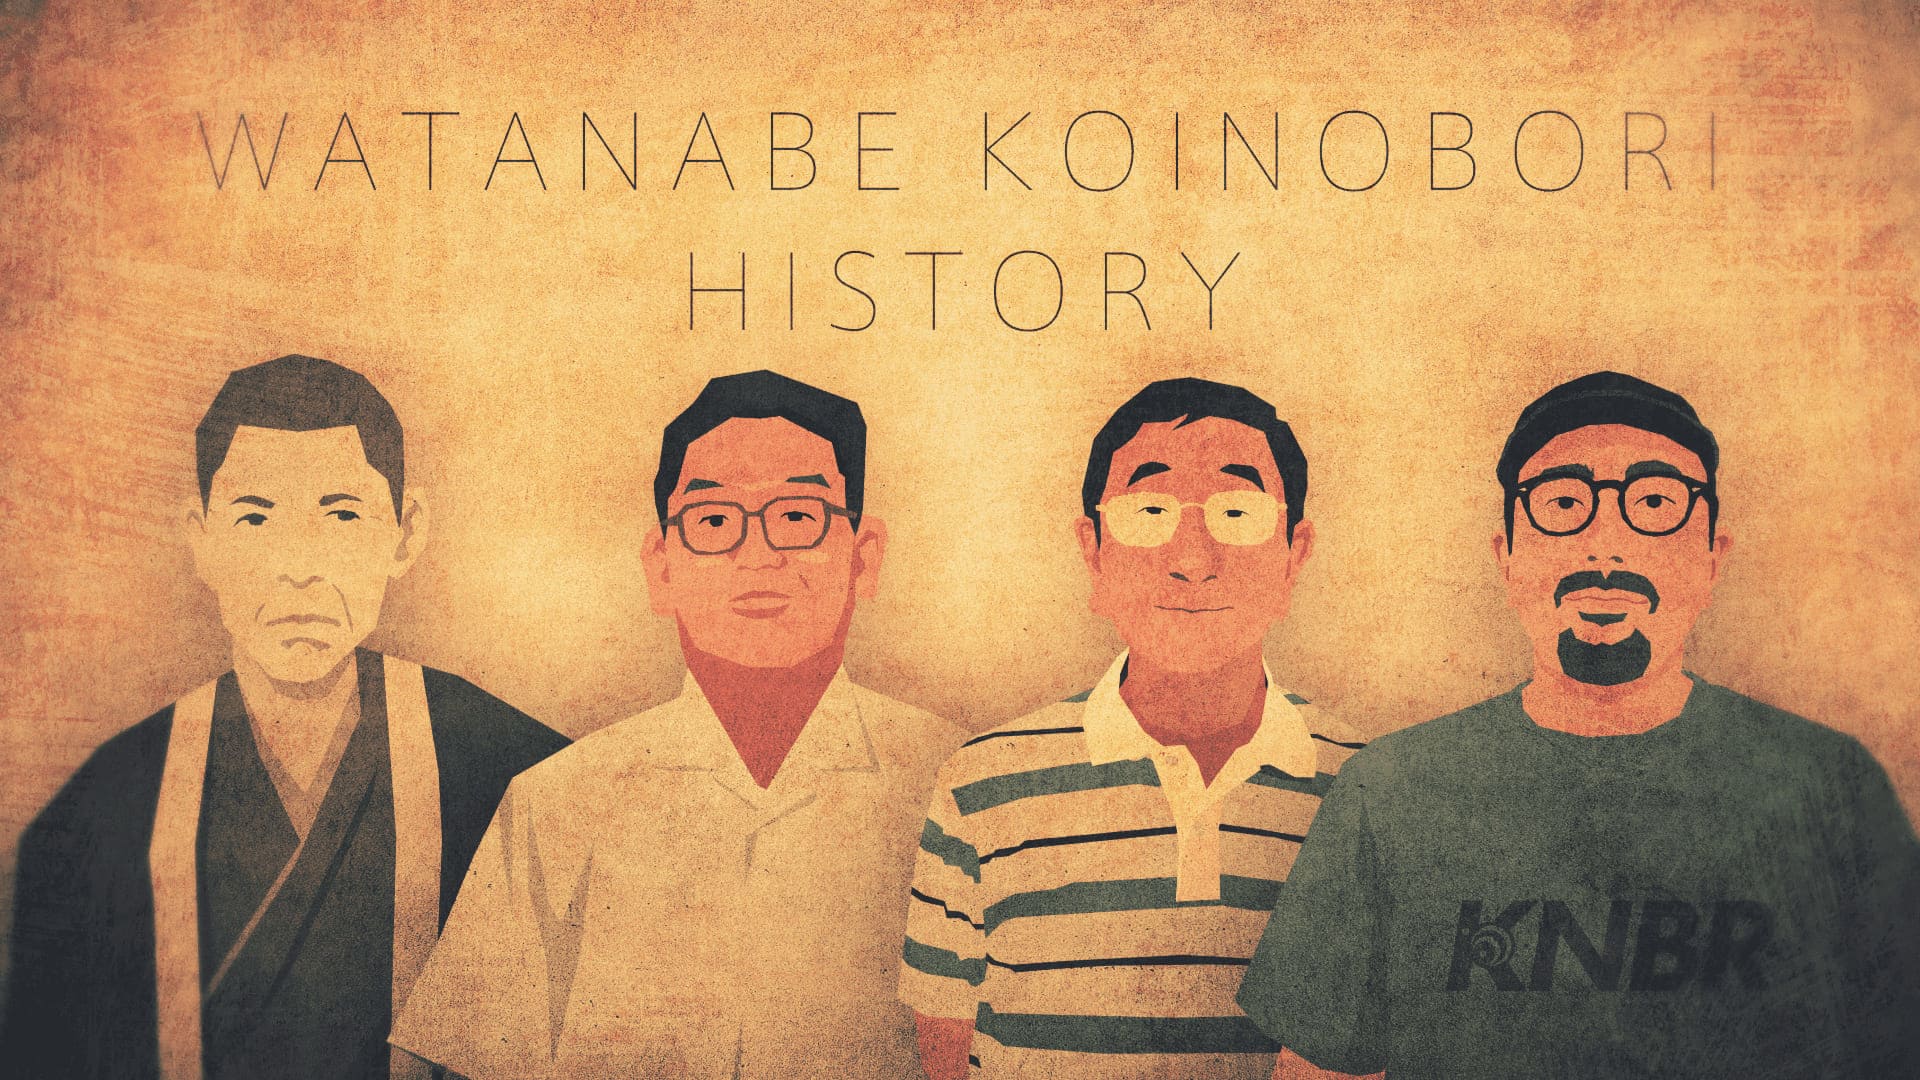 WATANABE KOINOBORI HISTORY